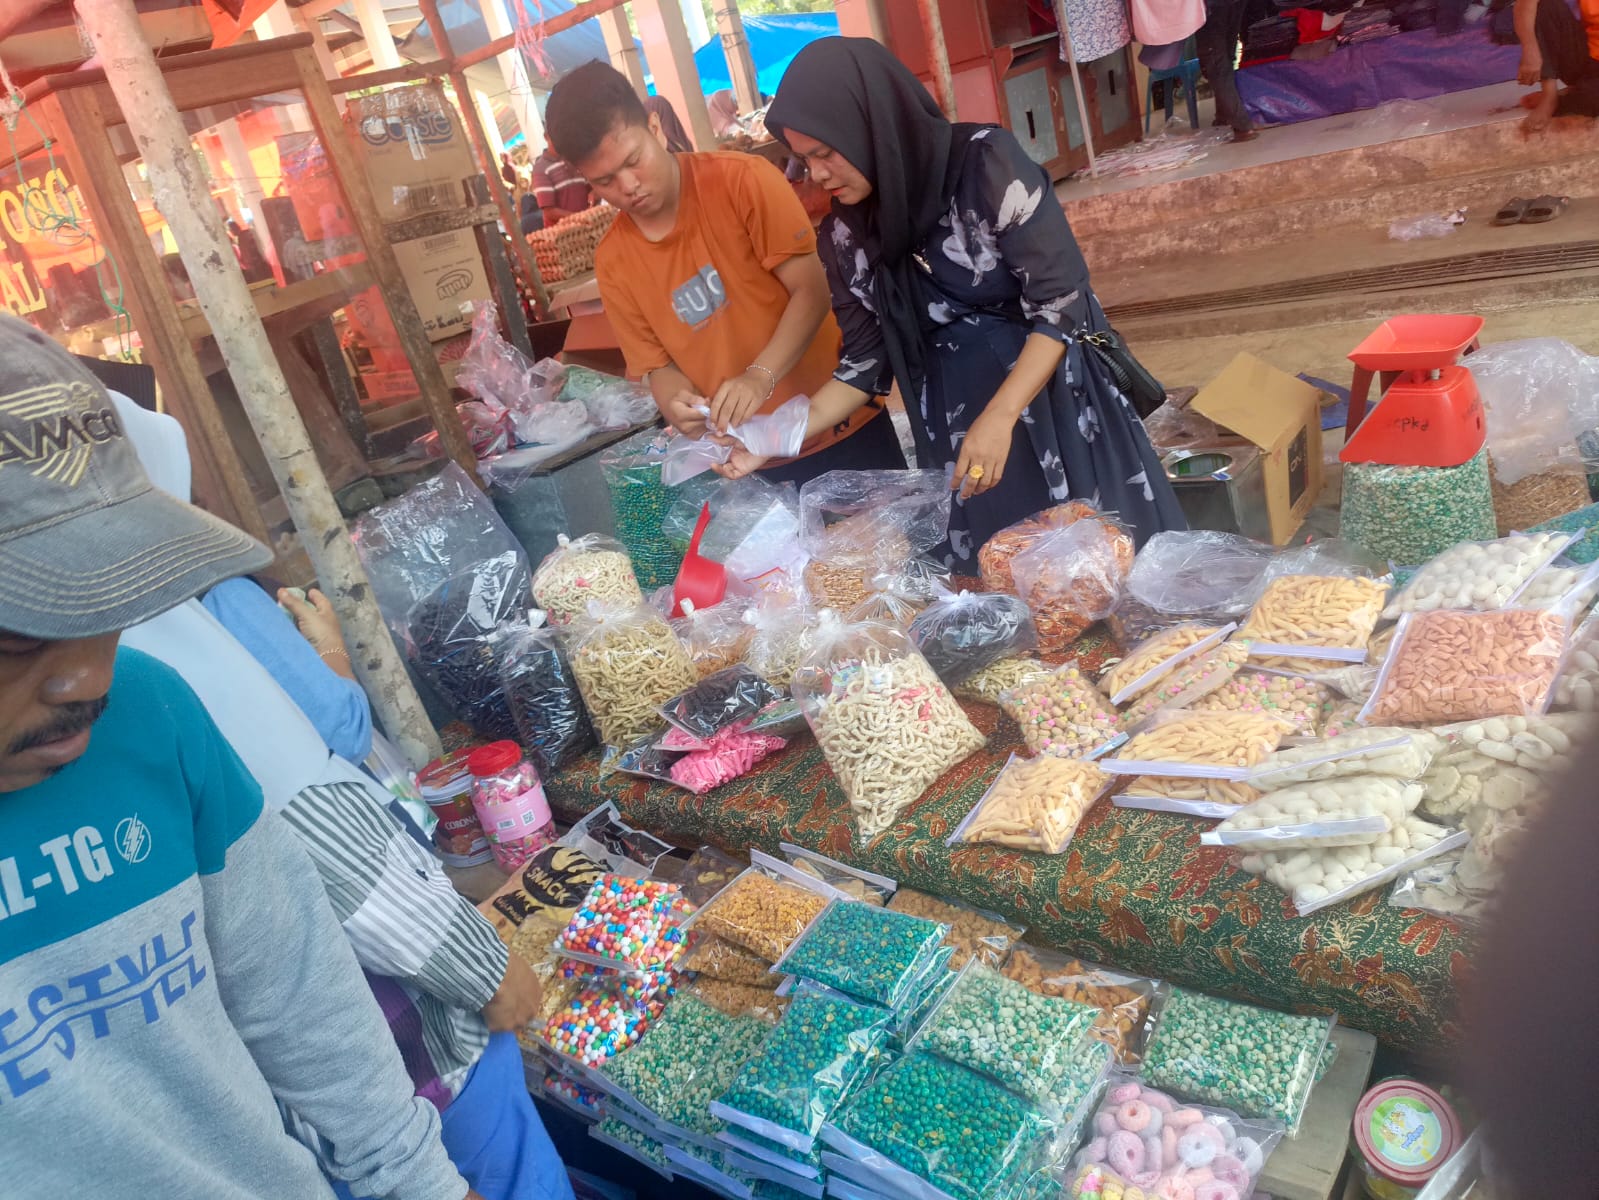 Penampakan Kondisi Pasar Terakhir Jelang Lebaran di Mukomuko, Pengunjung Membludak Walau Harga Naik 